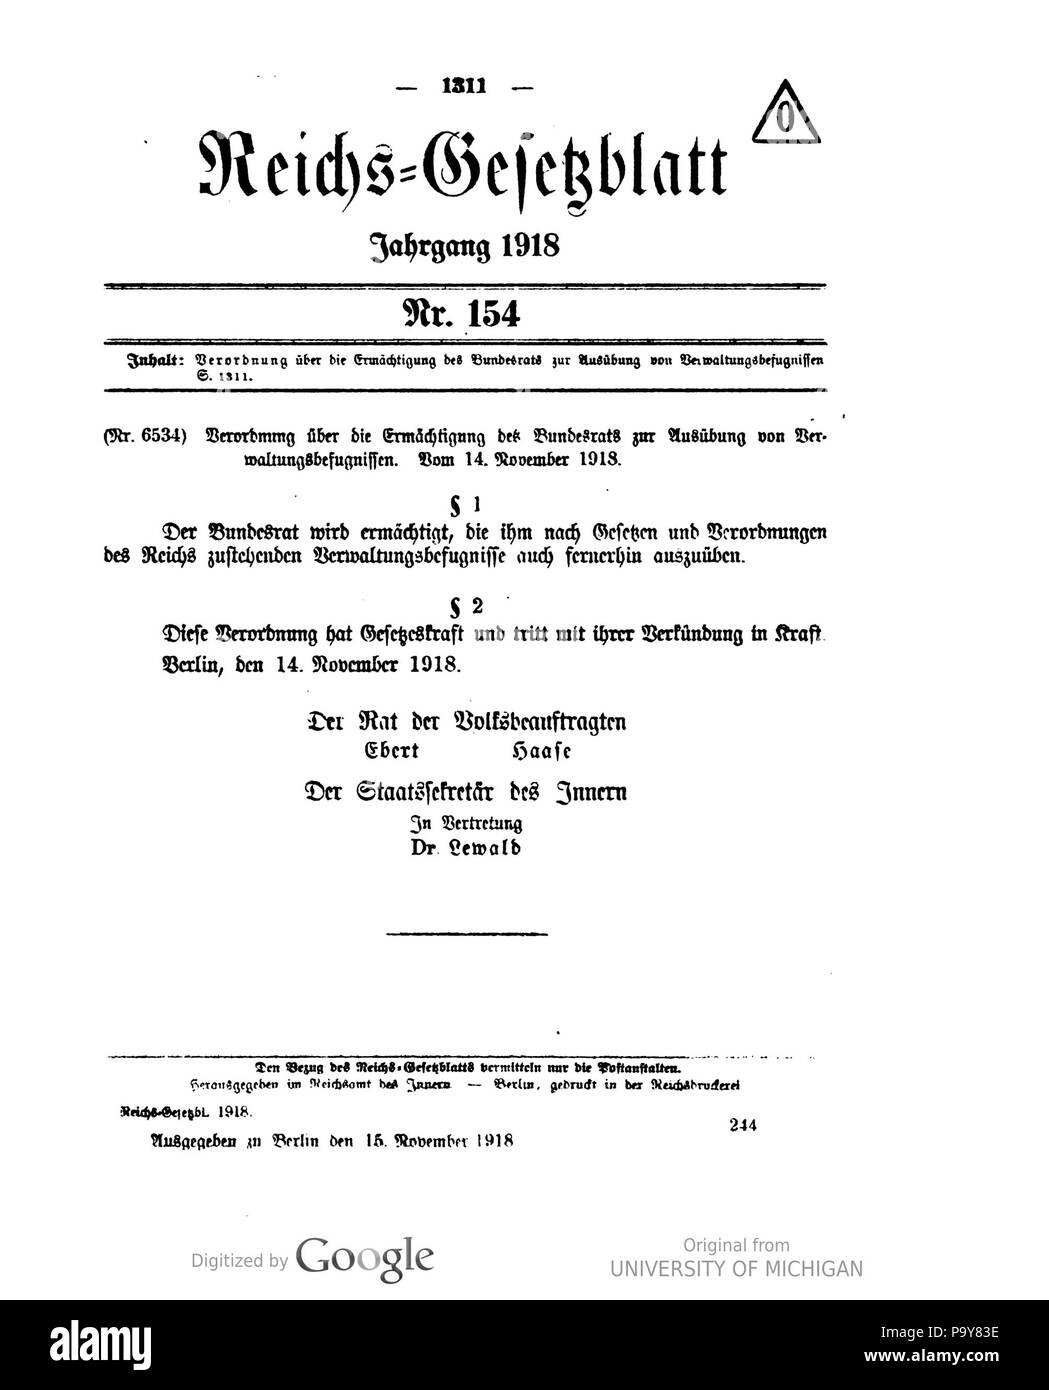 484 Deutsches Reichsgesetzblatt 1918 154 1311 Foto Stock